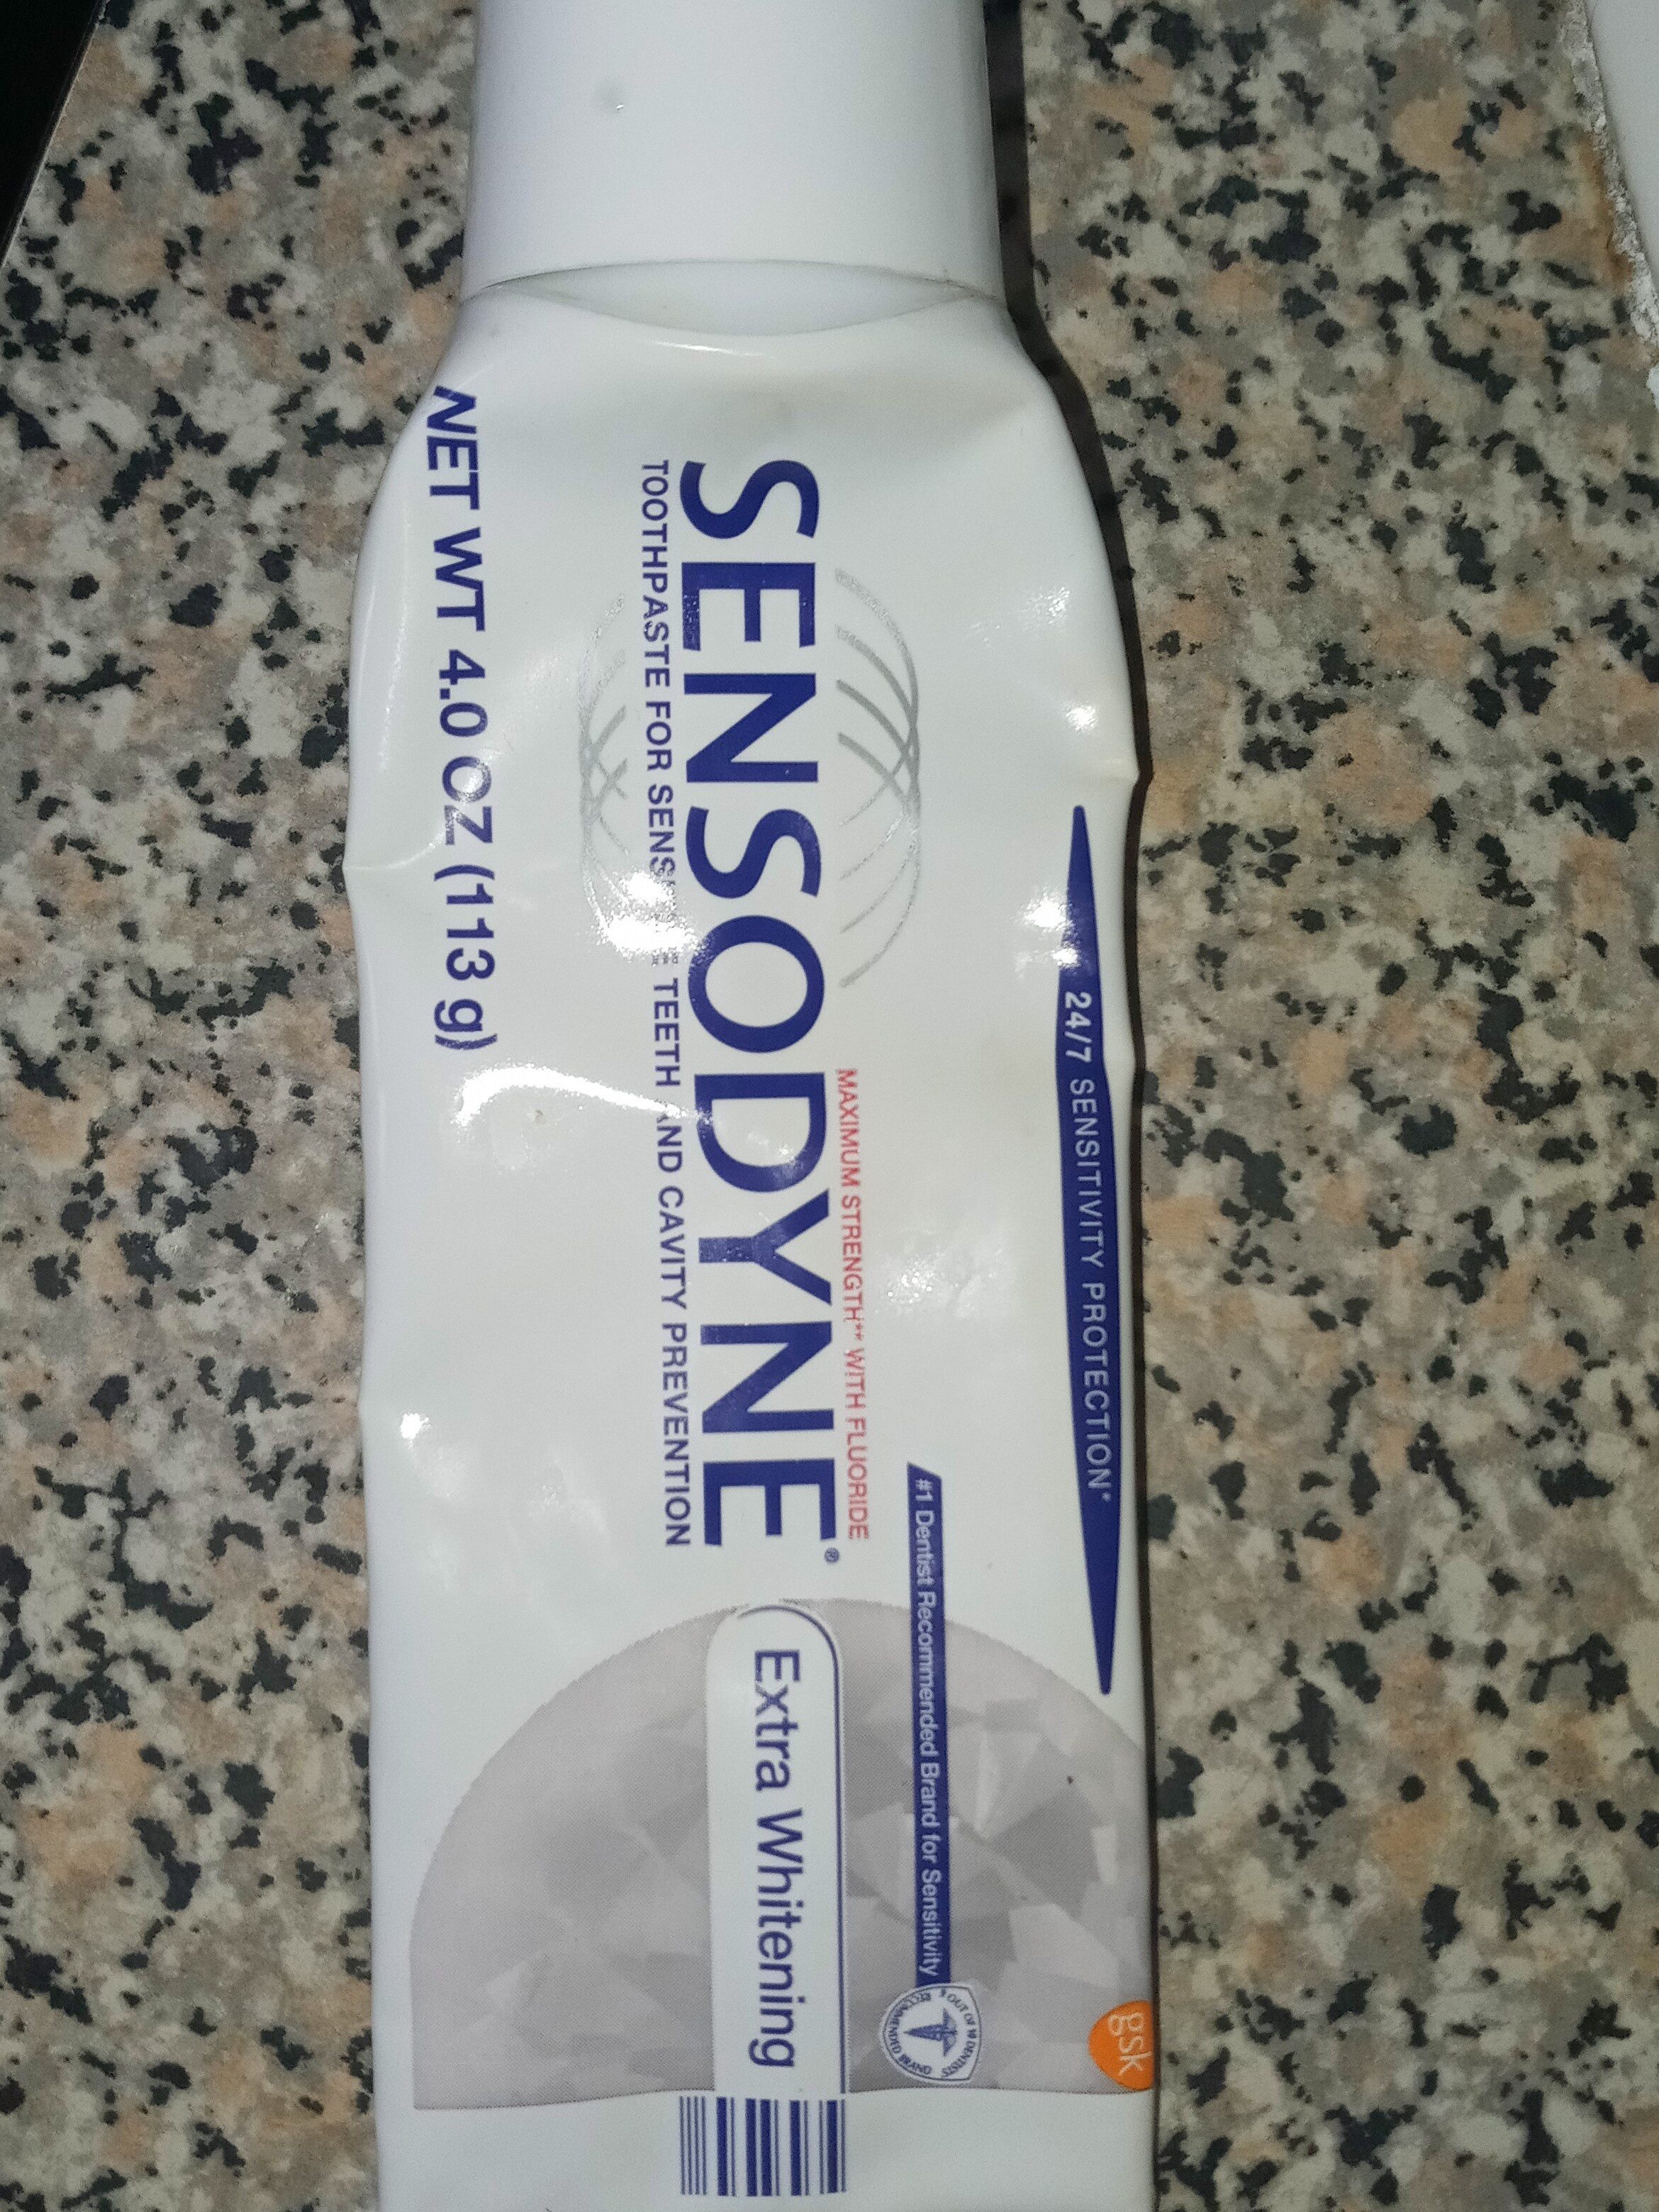 Sendosine - Ингредиенты - en